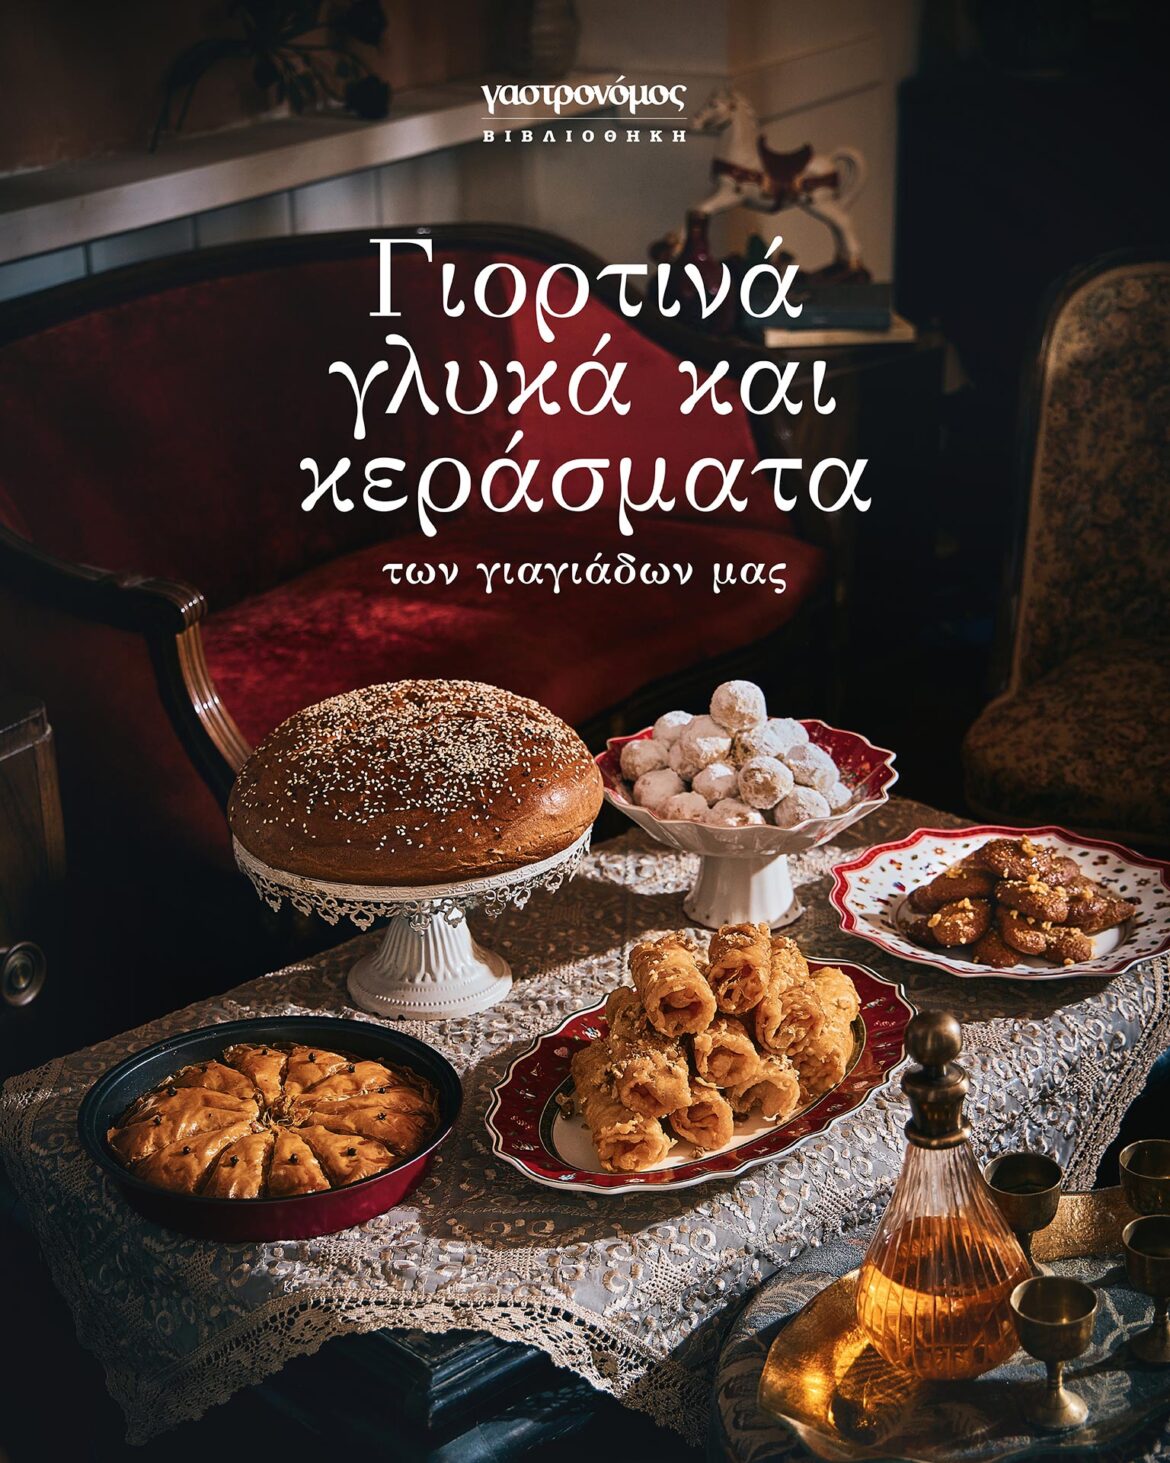 Νέο συλλεκτικό βιβλίο από τον Γαστρονόμο: Γιορτινά γλυκά & κεράσματα των γιαγιάδων μας